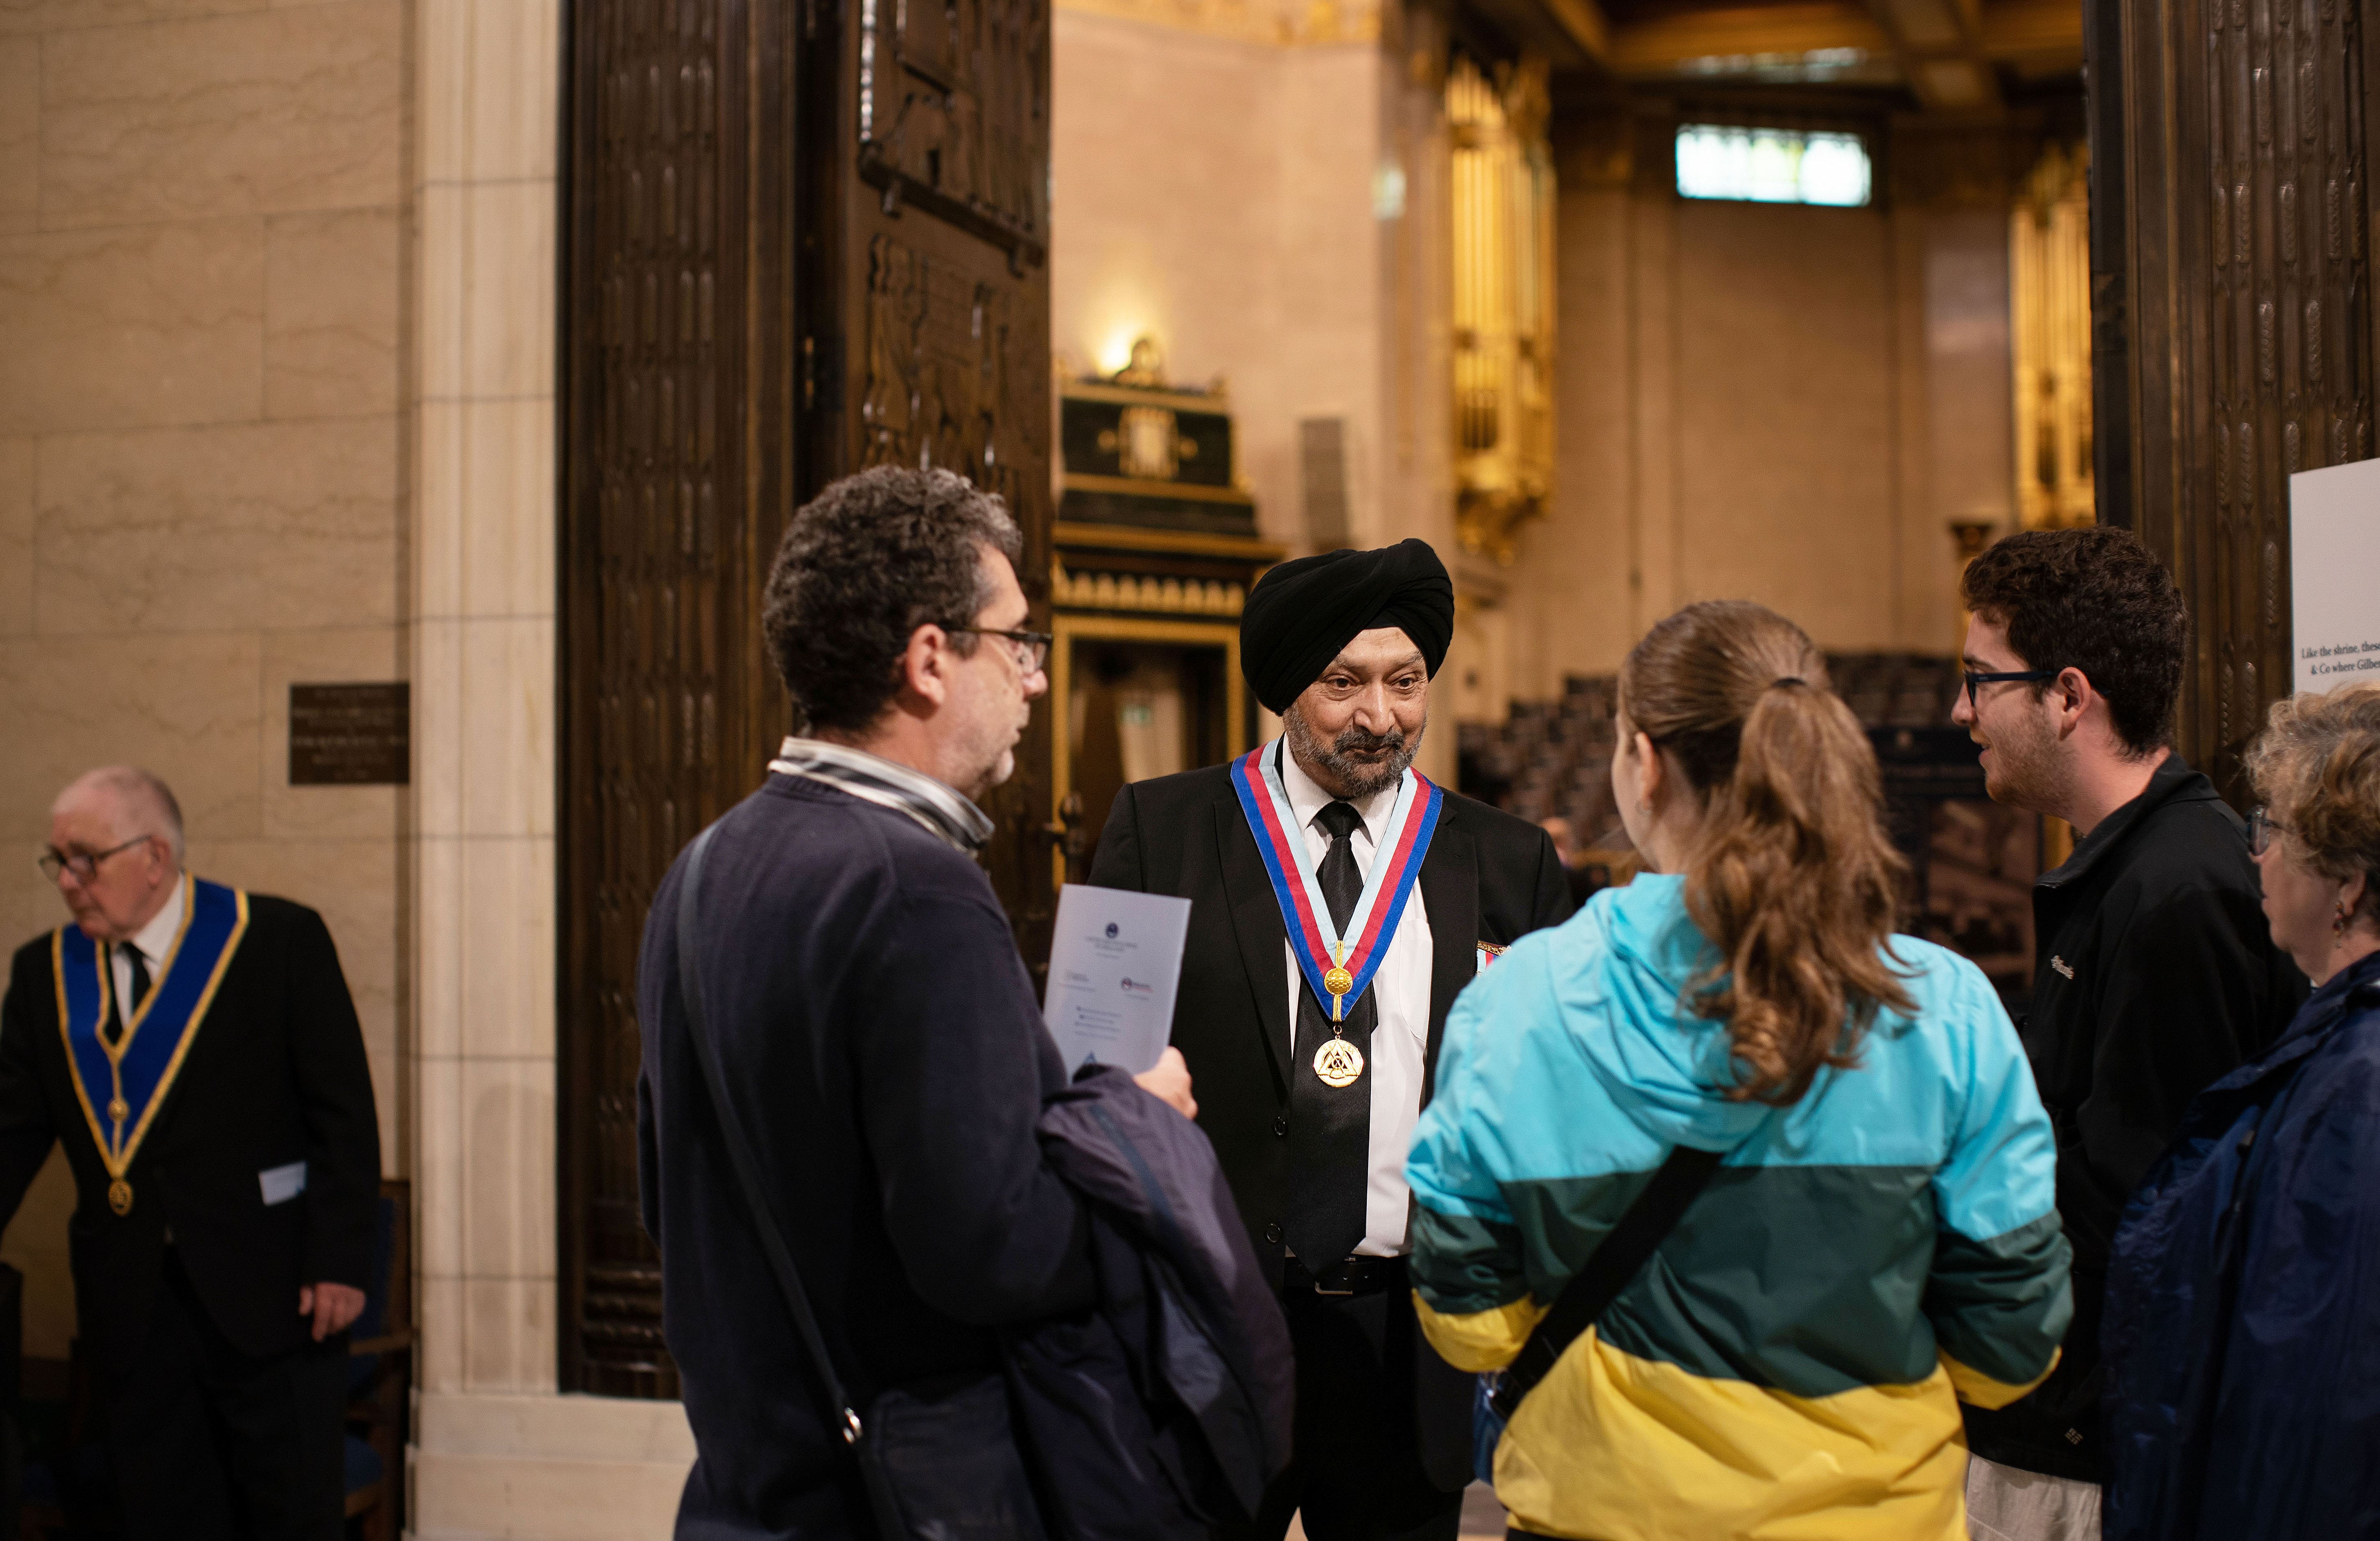 Visitors talking to a Freemason at Freemasons Hall